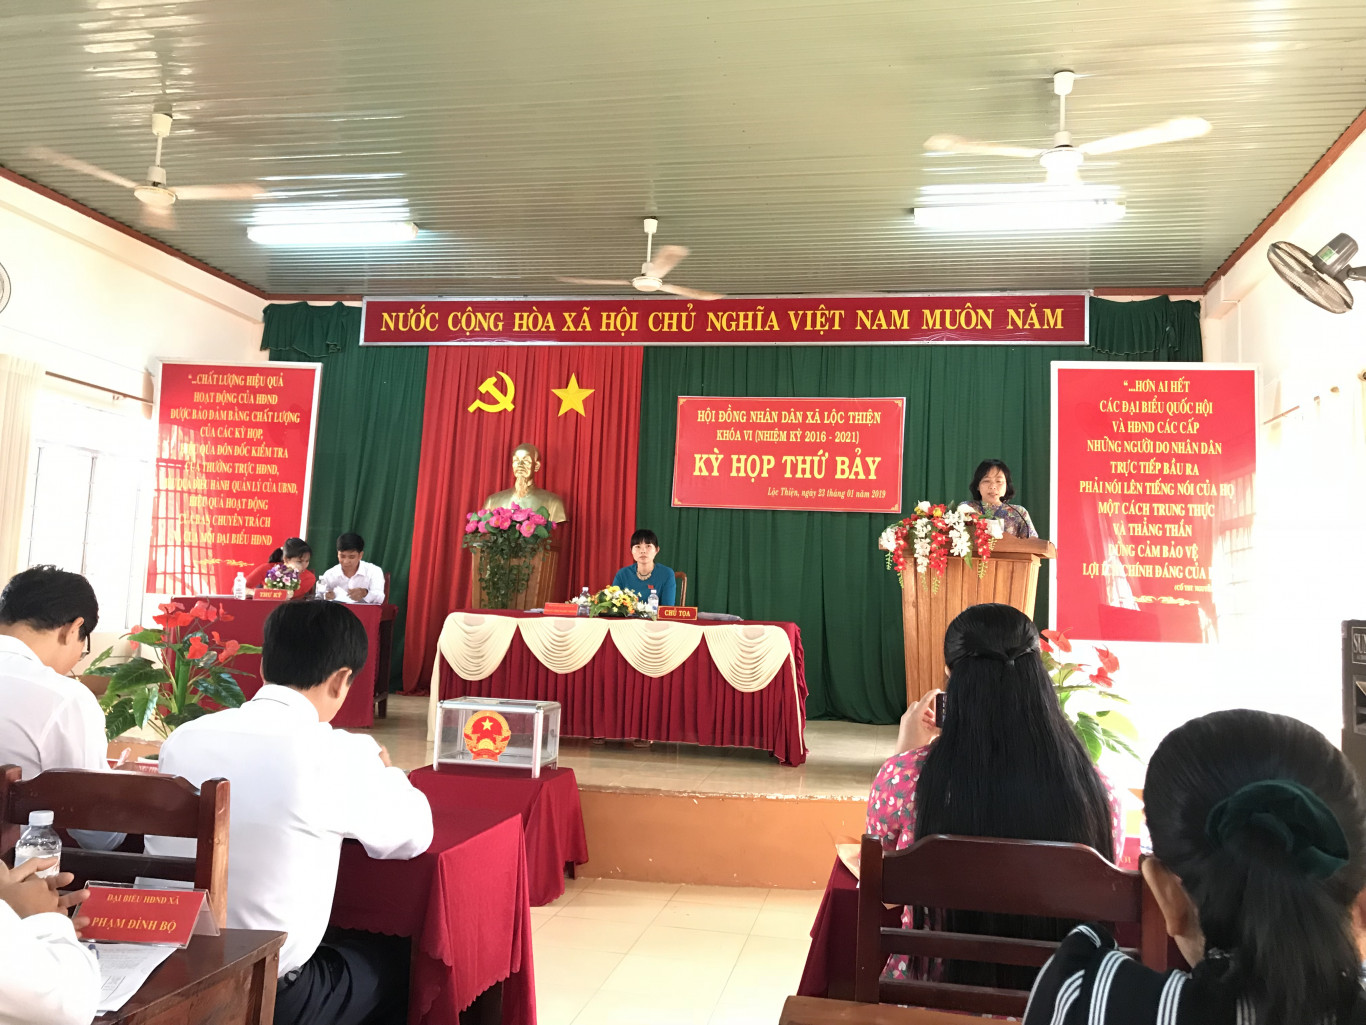 Kỳ họp thứ bảy Hội đồng nhân dân xã Lộc Thiện, huyện Lộc Ninh khóa VI nhiệm kỳ 2016-2021